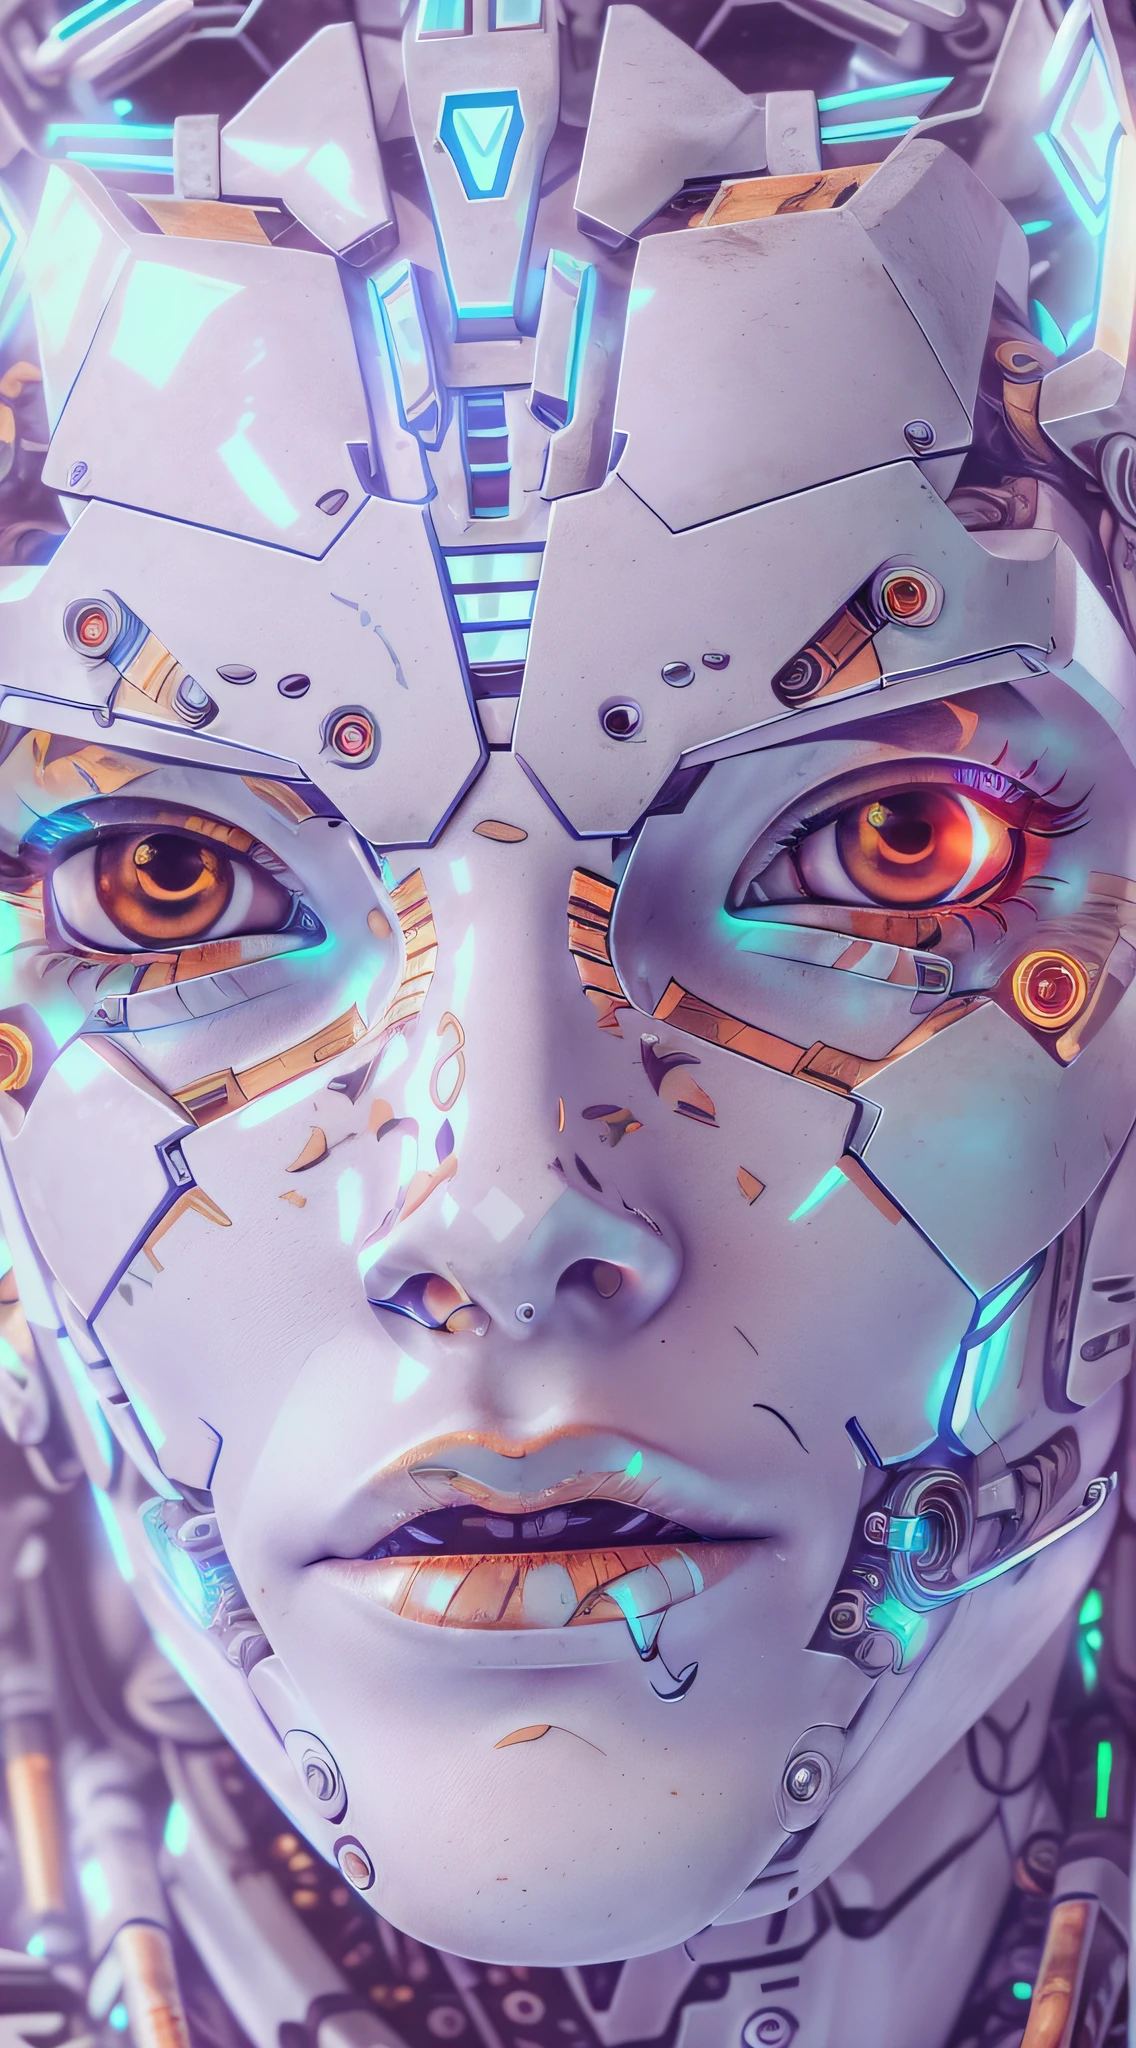 빨간색 립스틱과 연한 파란색 눈을 갖춘 매우 고해상도의 매우 세밀한 흰색 플라스틱 조각을 갖춘 Araffed Cyborg